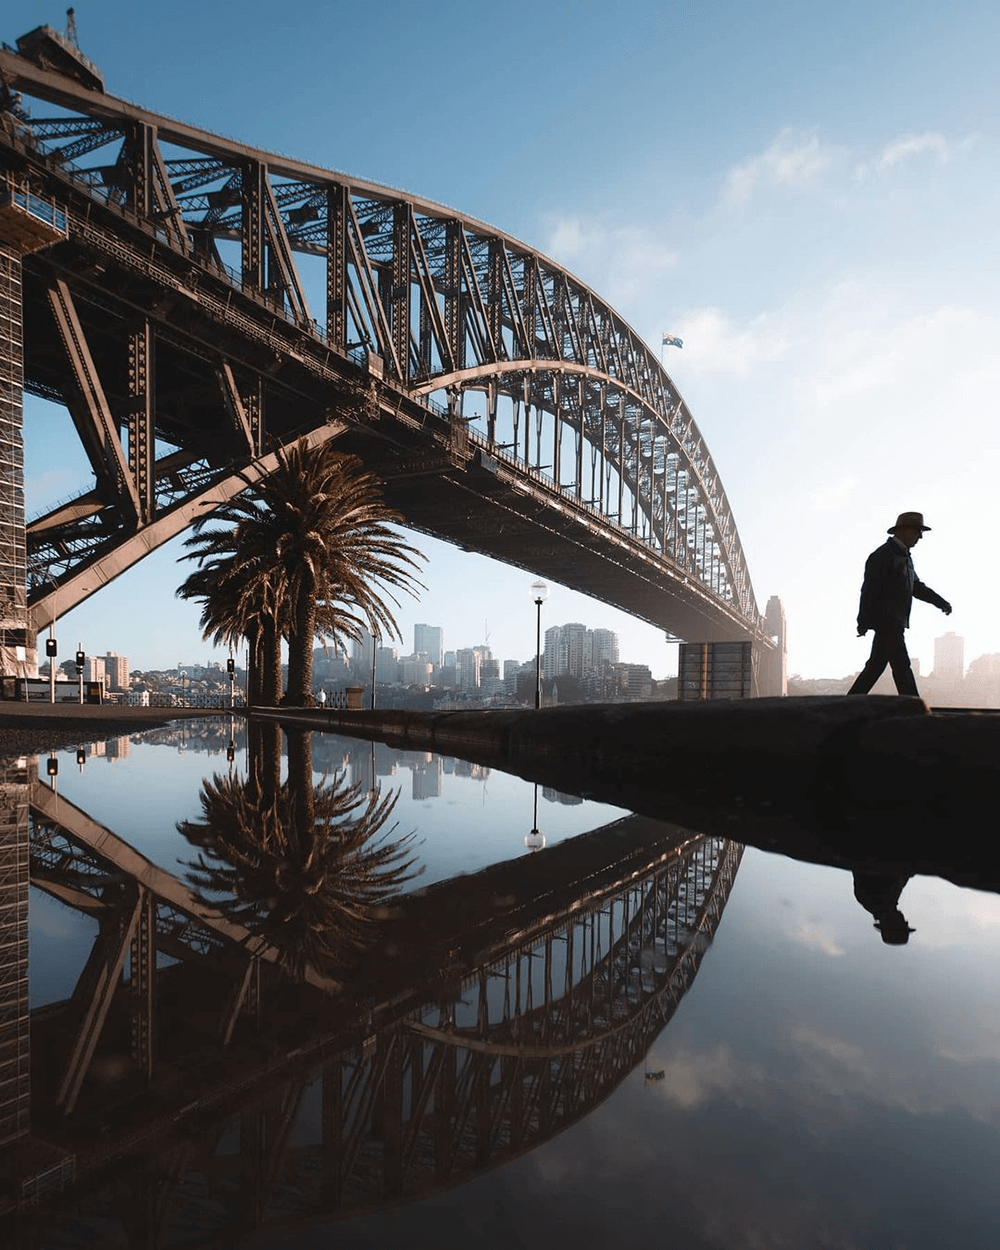 Image of Sydney Harbour Bridge by @mnshots